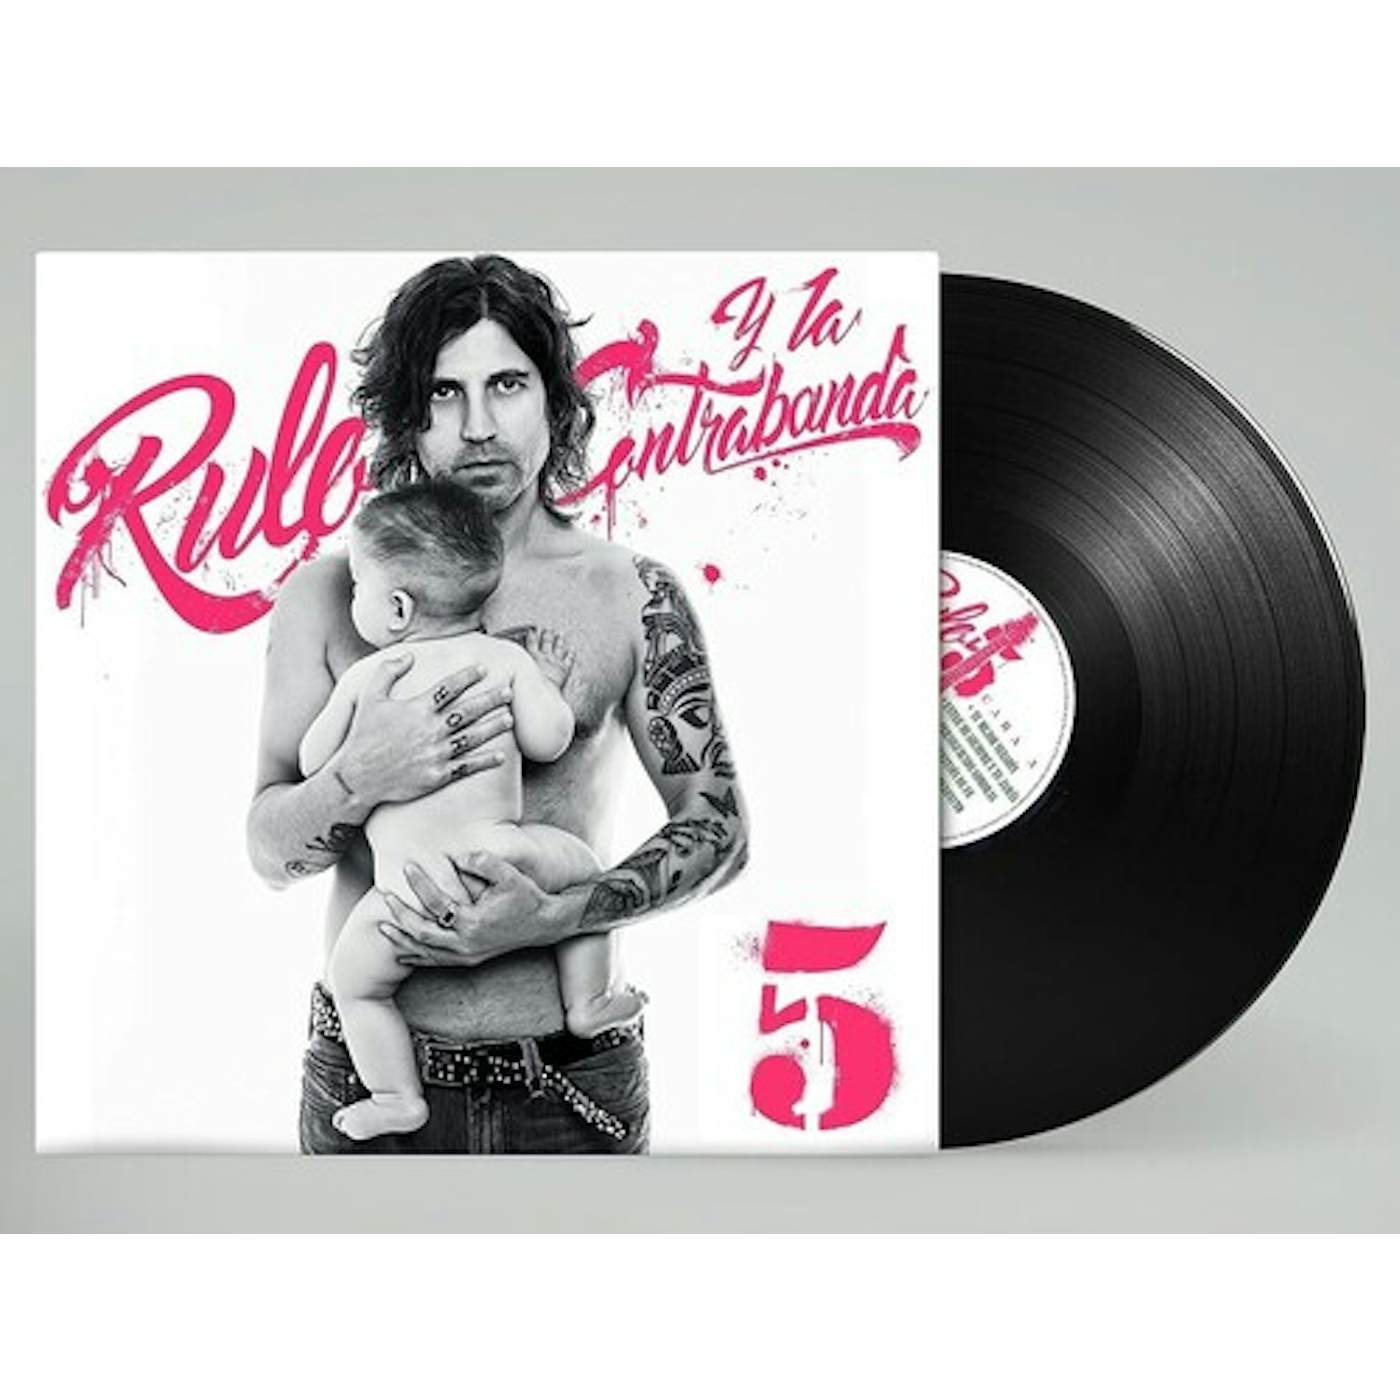 Rulo y la contrabanda 5. Vinyl Record